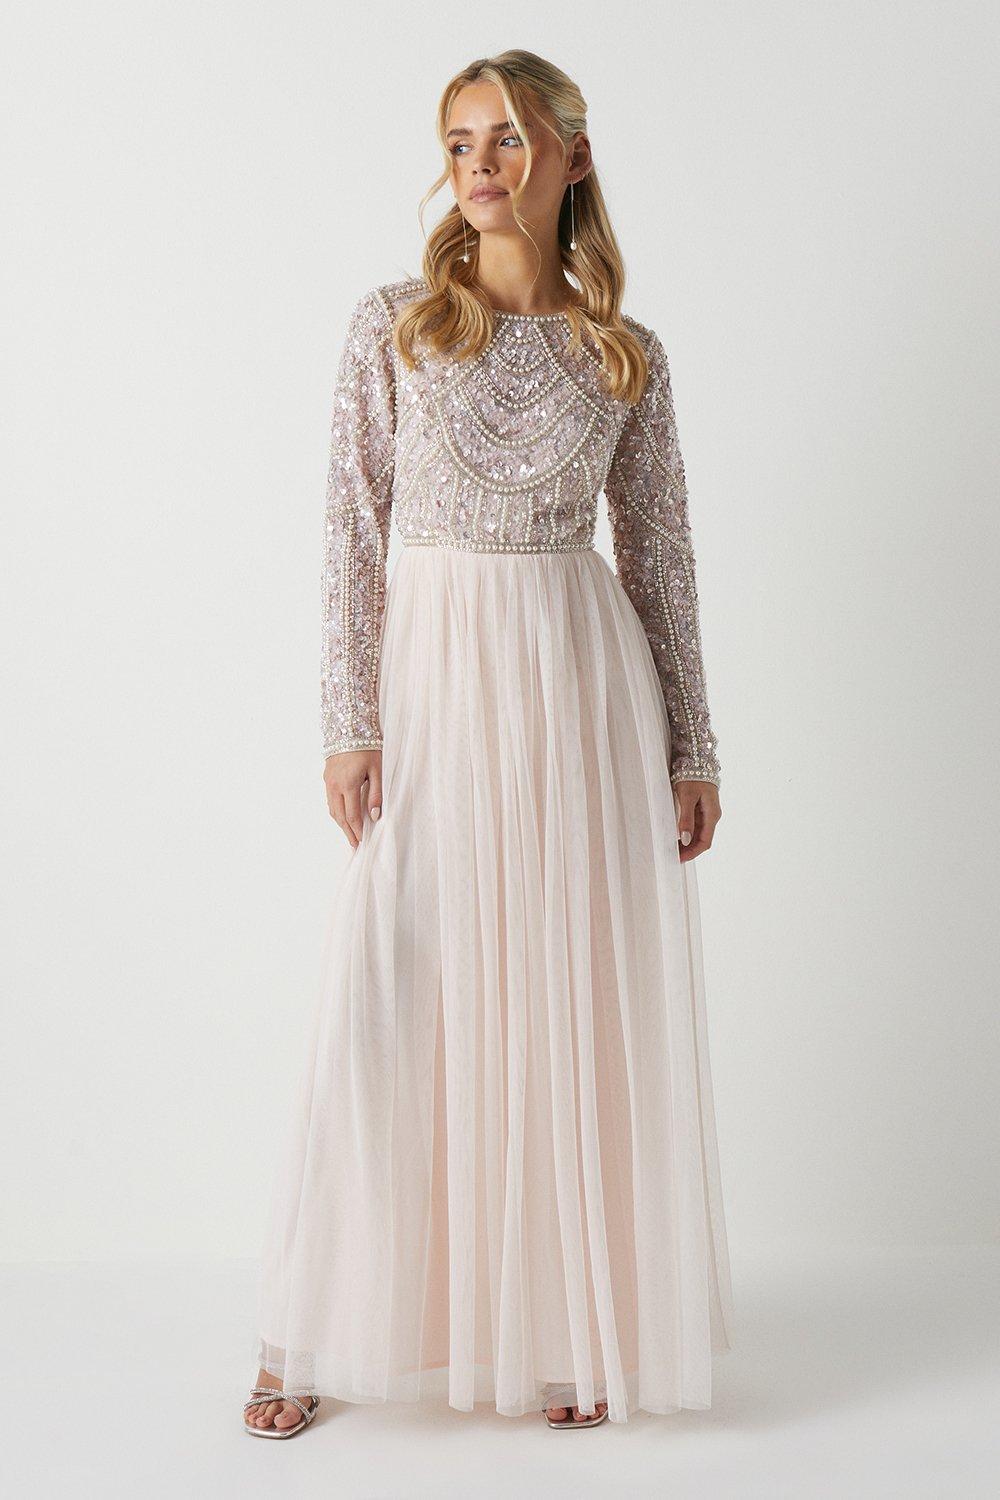 цена Миниатюрное платье-юбка из тюля с лифом и лифом подружки невесты, украшенным жемчугом Coast, розовый